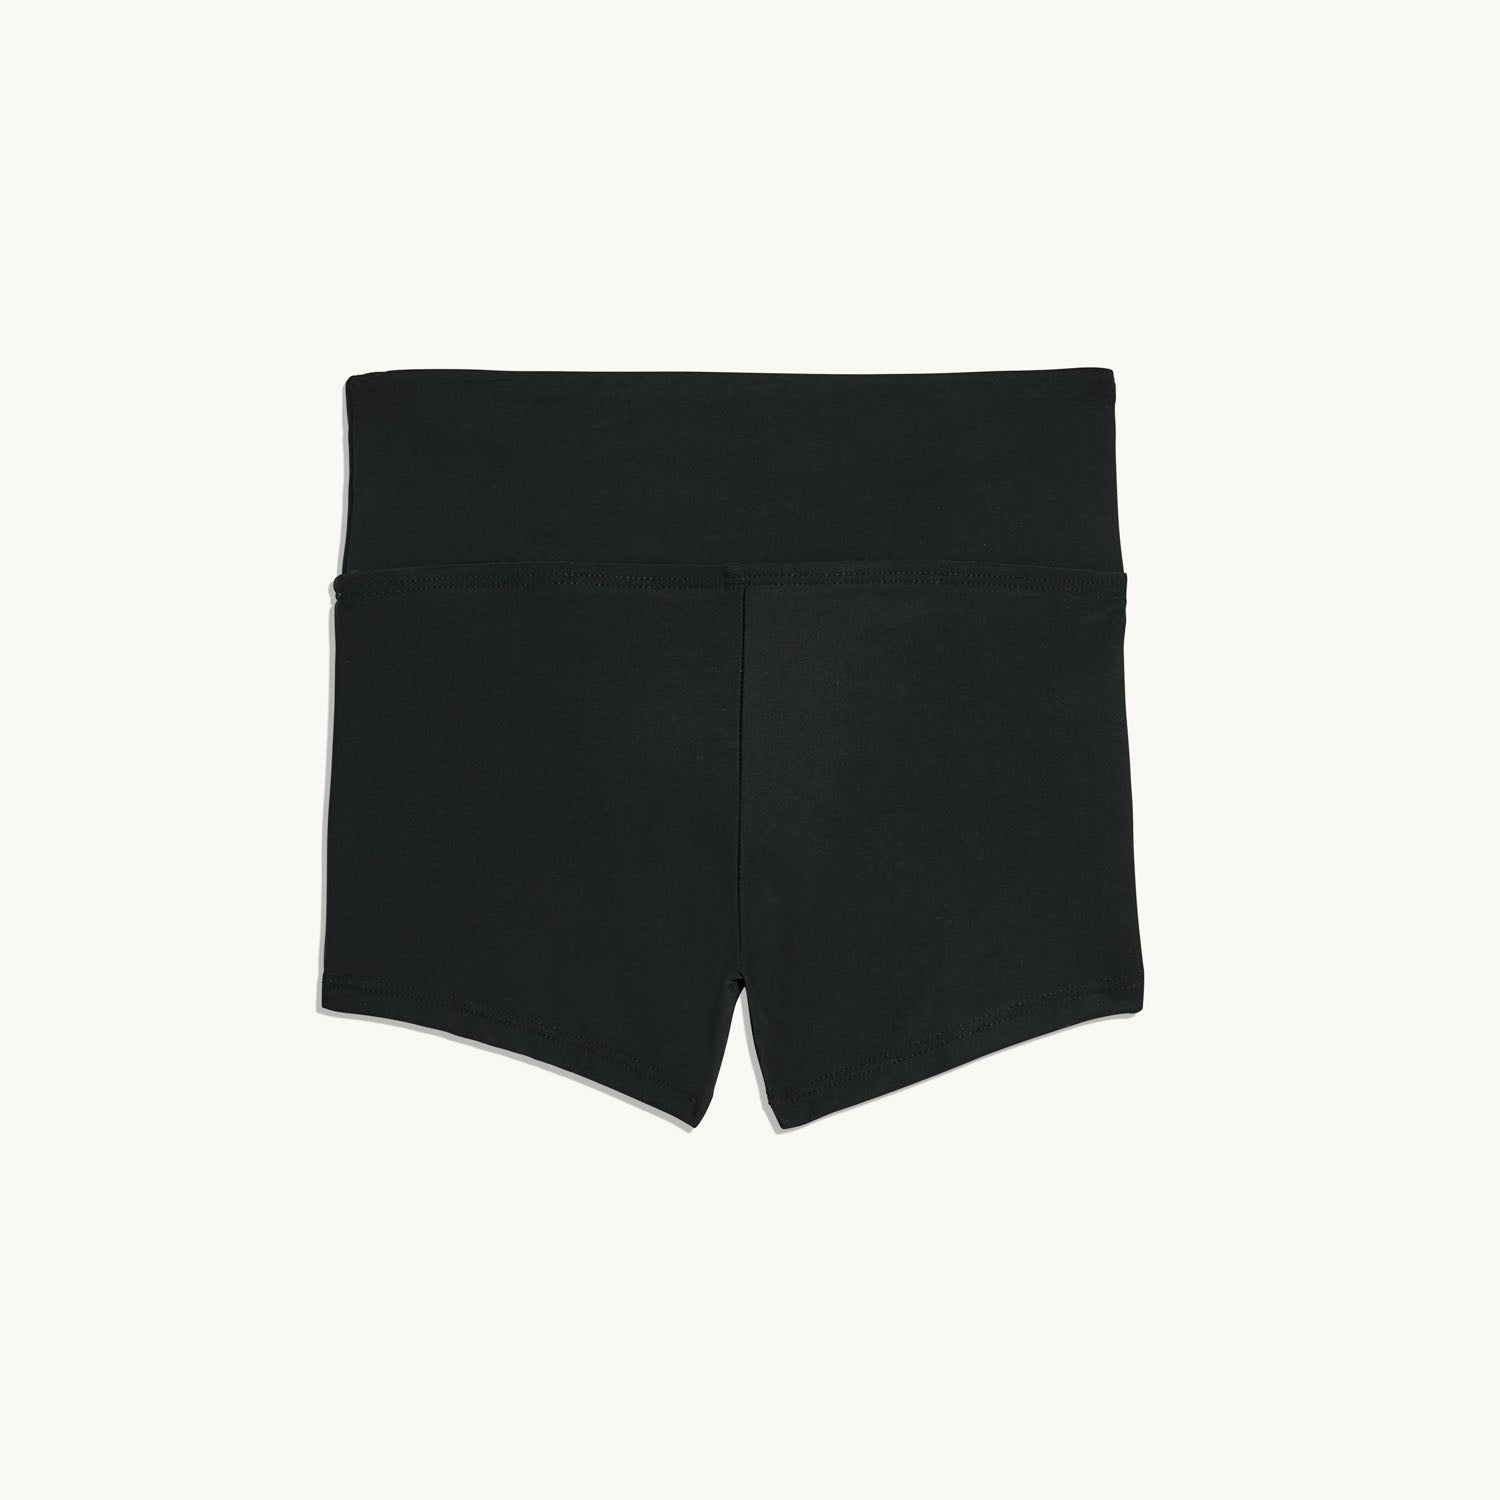 Leakproof Swim Short Bottom | Period Swimwear for Teens | Kt by Knix